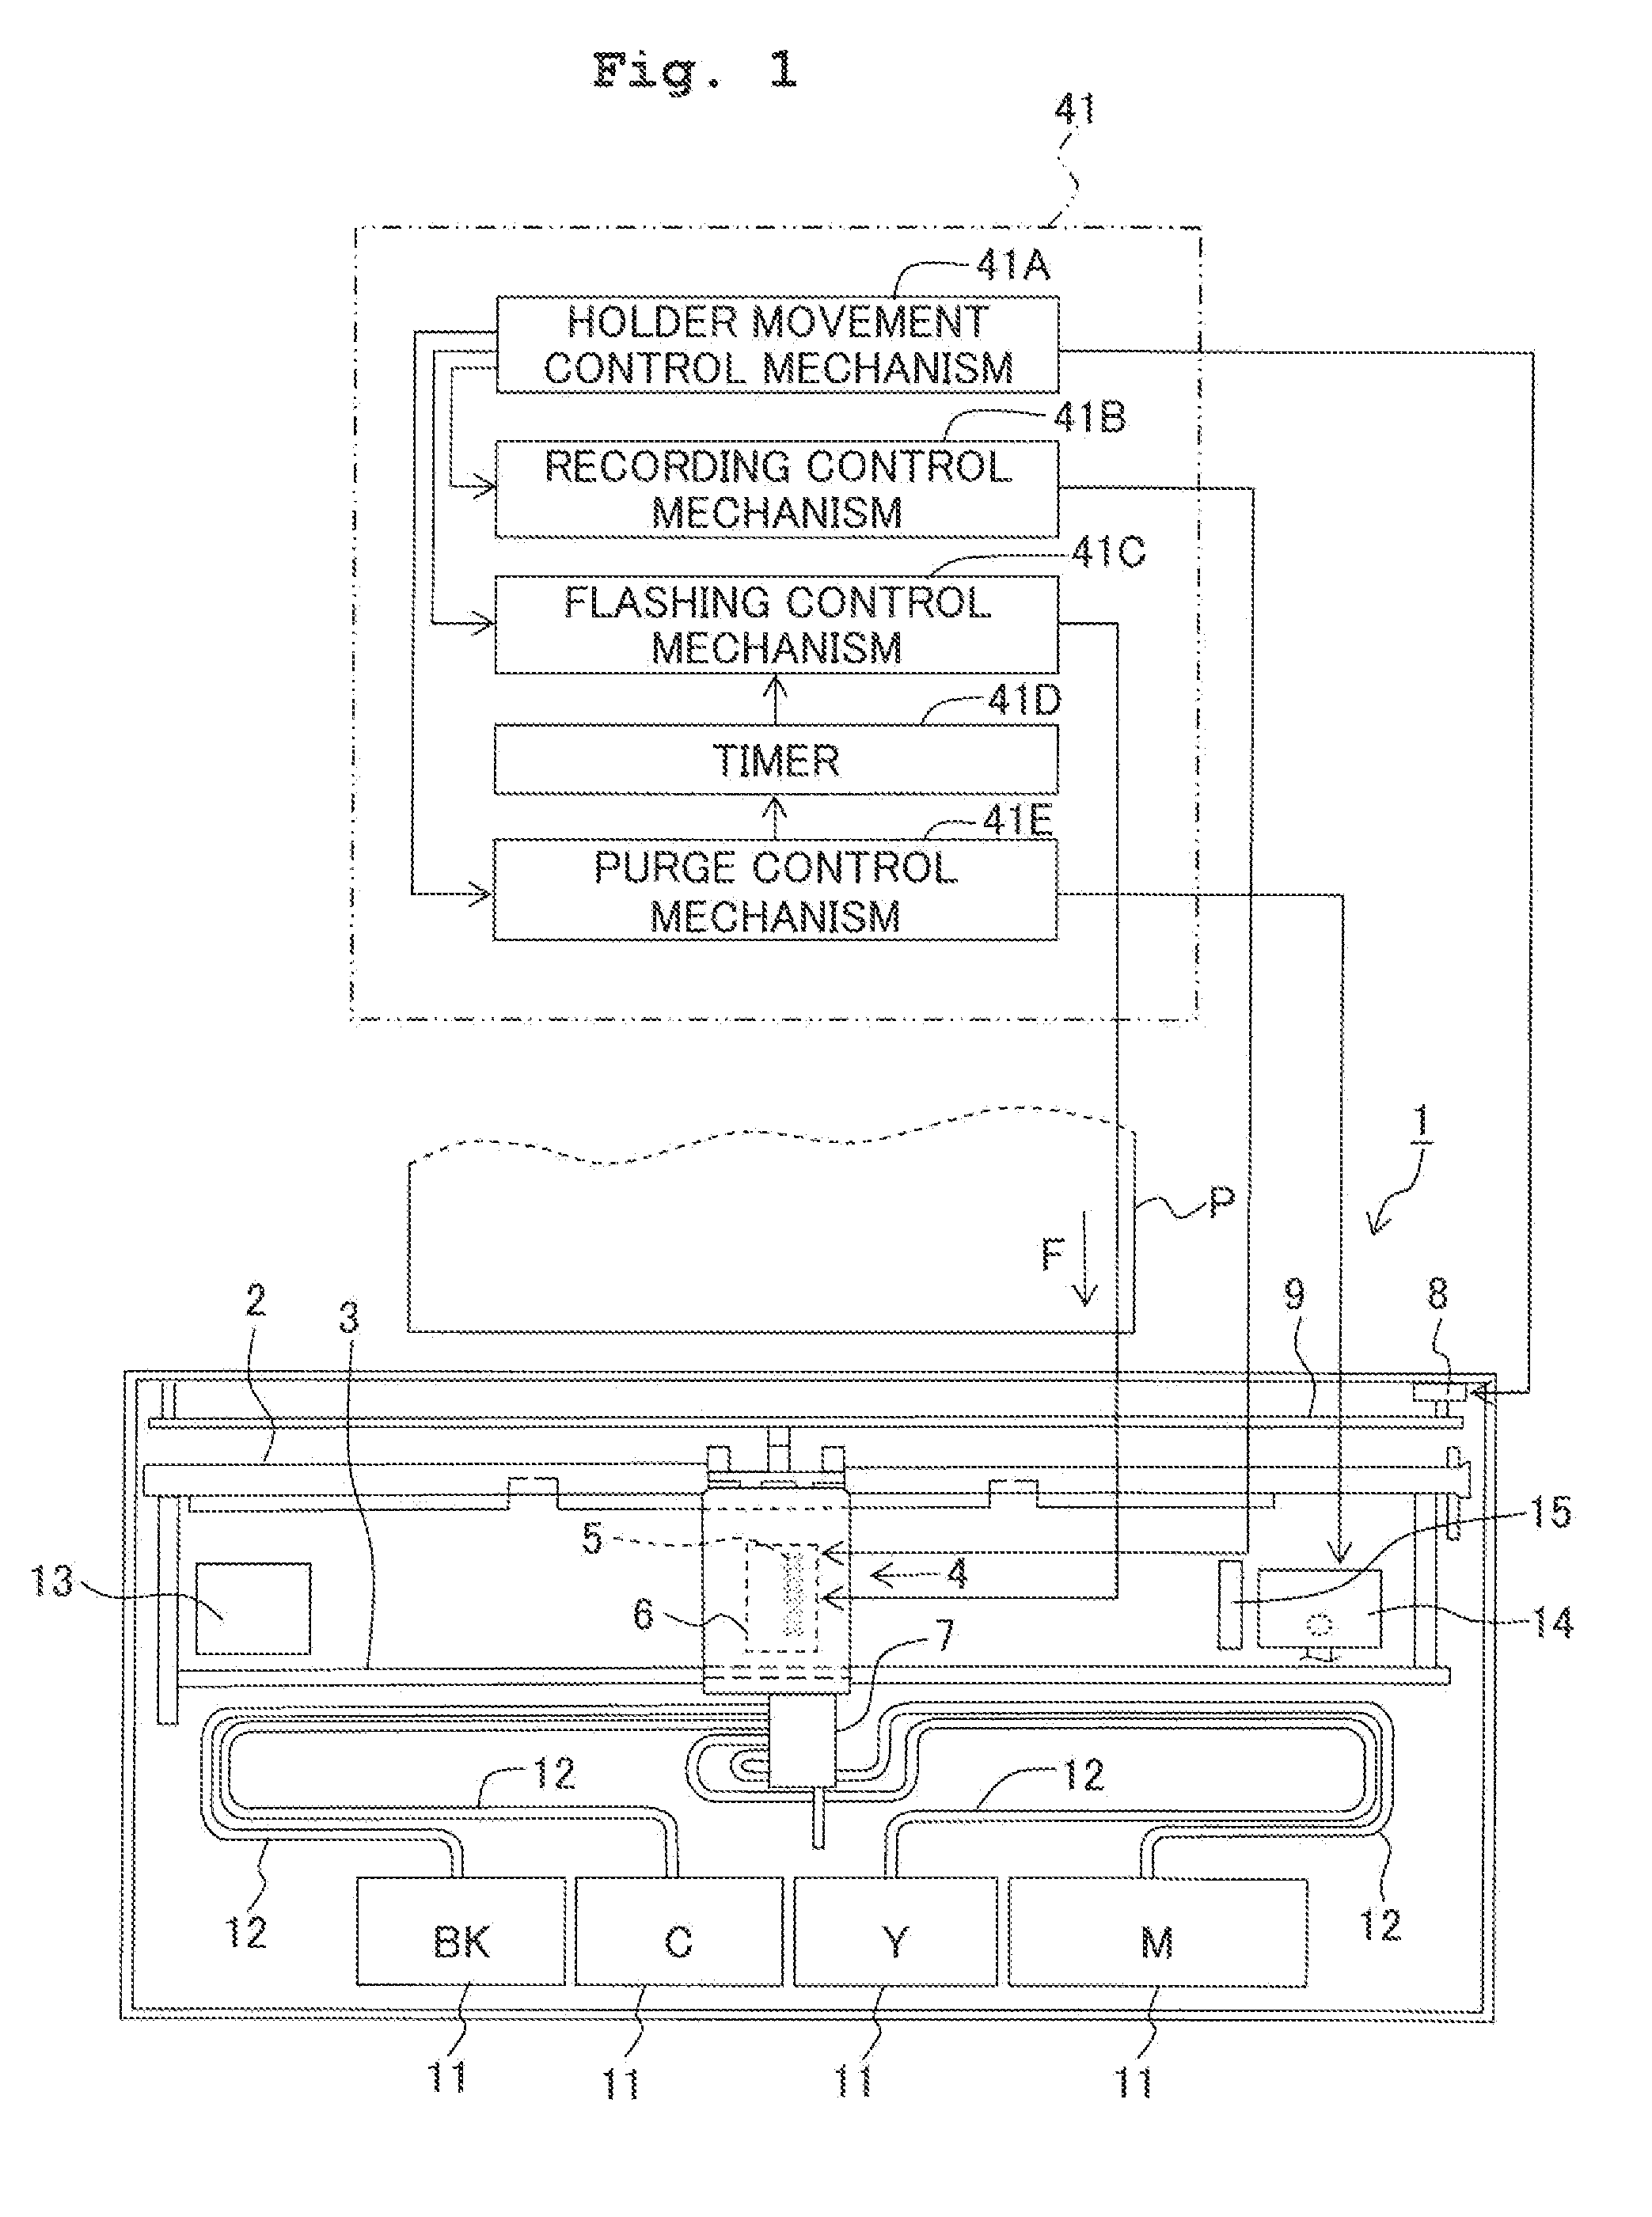 Liquid discharge apparatus